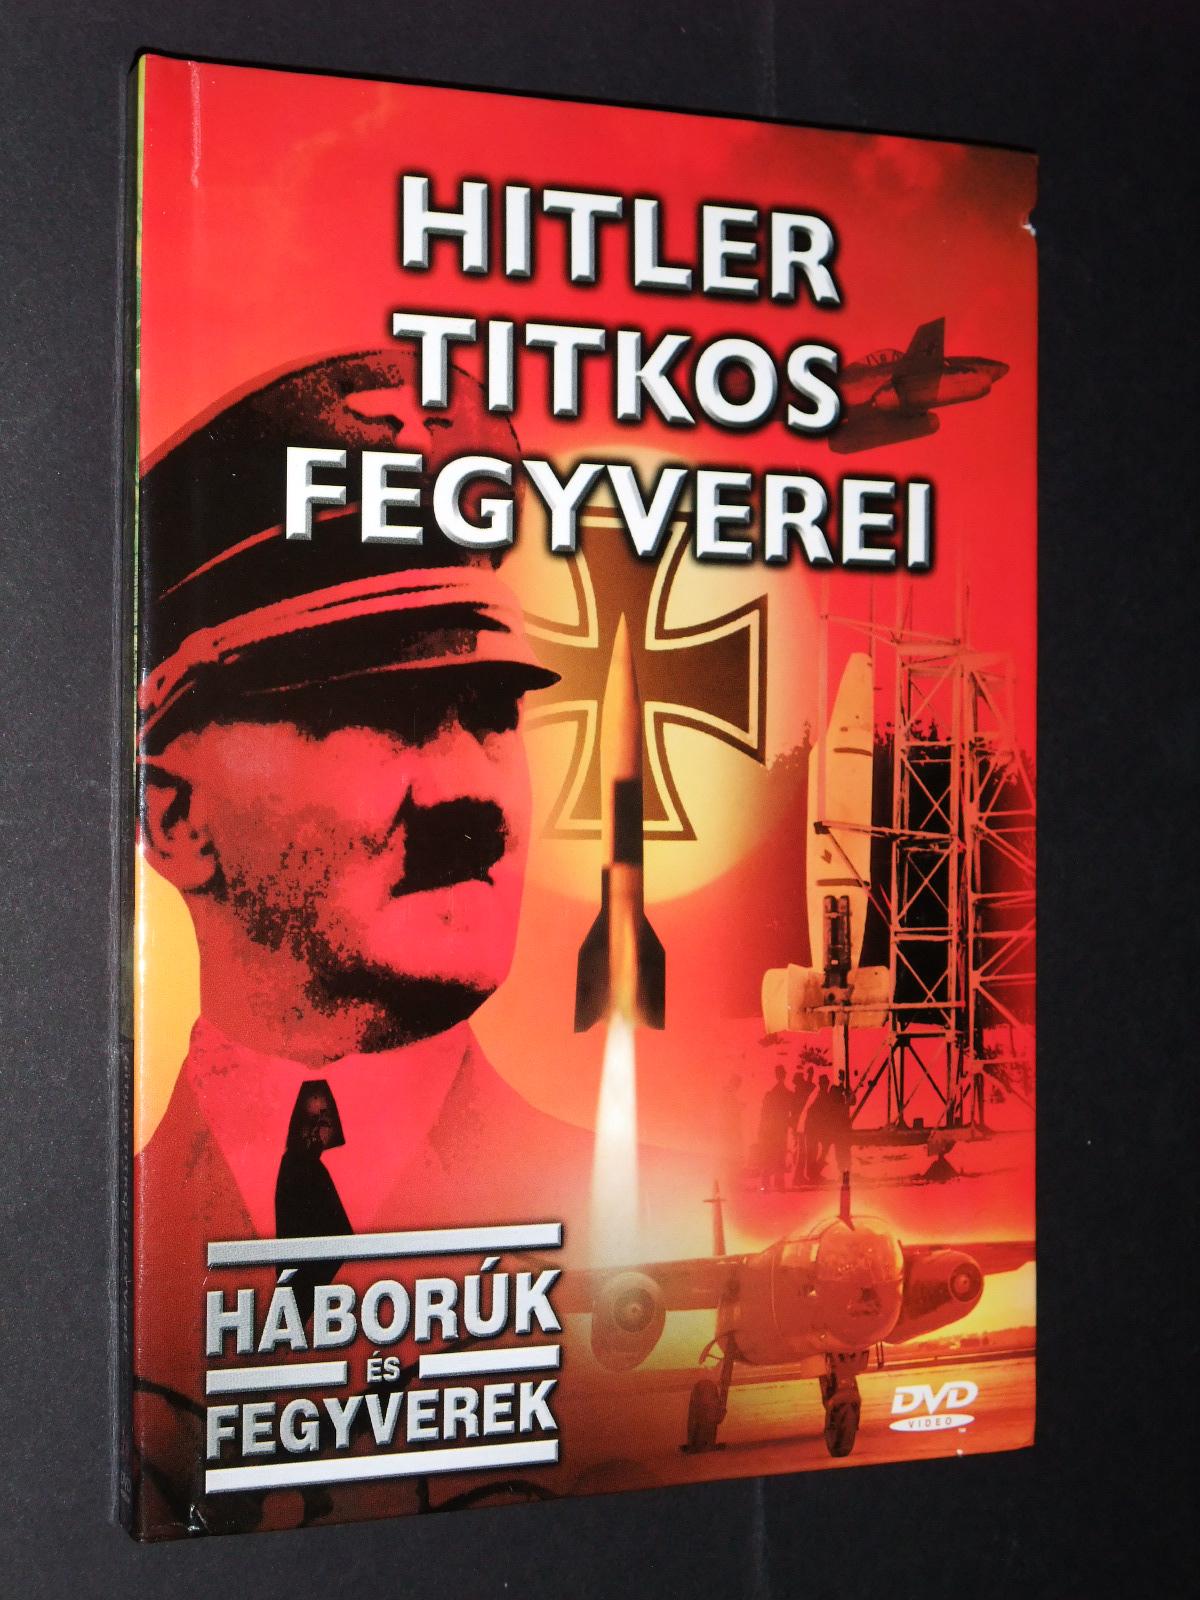 Hitler titkos fegyverei DVD és könyv 

1250.-